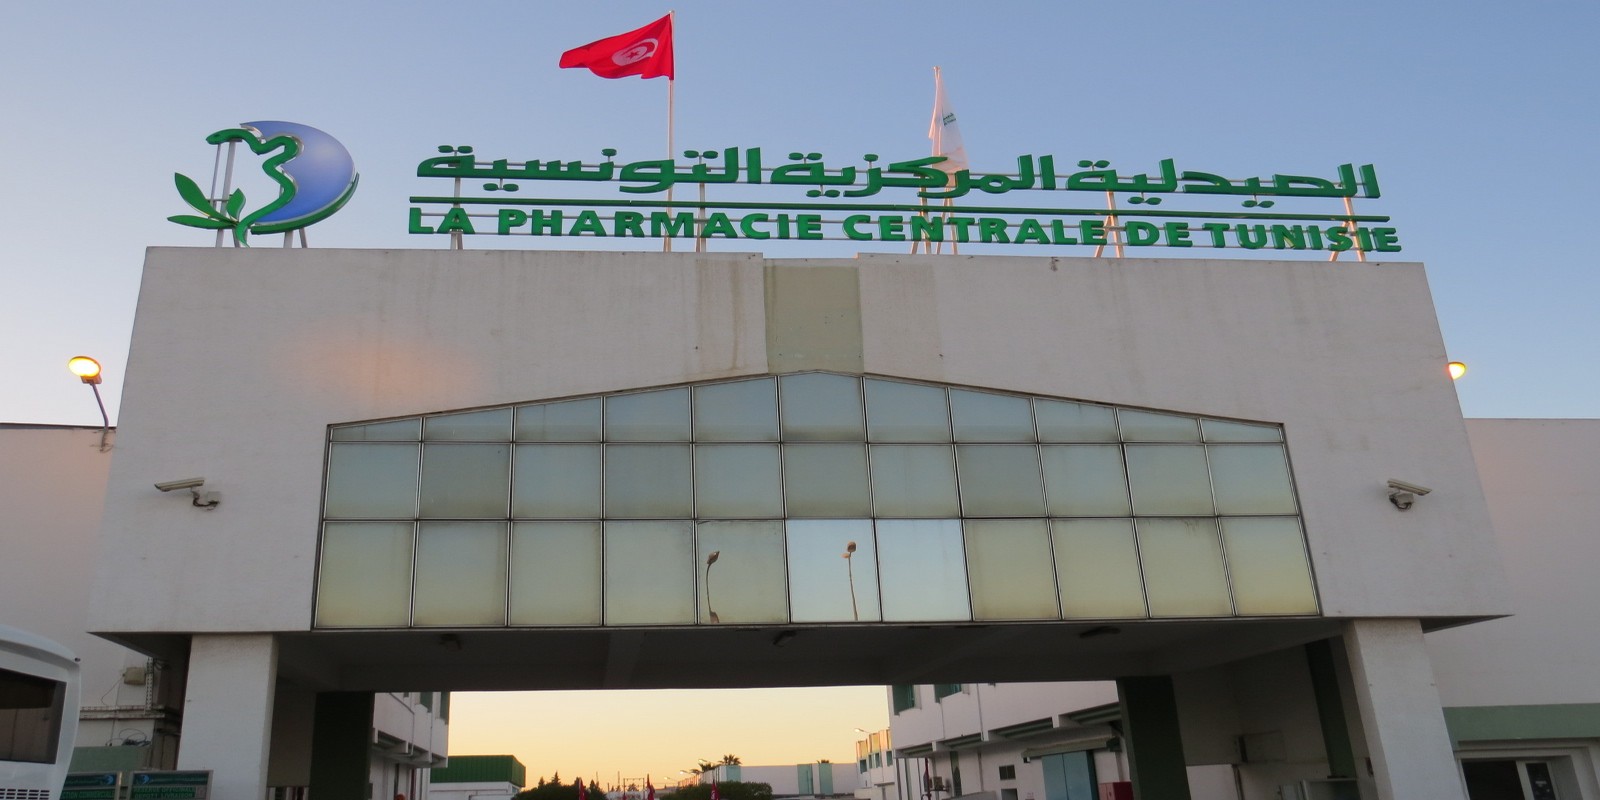 Tunisie: Lourdes dettes traînées par les hôpitaux et la CNAM auprès de la Pharmacie centrale